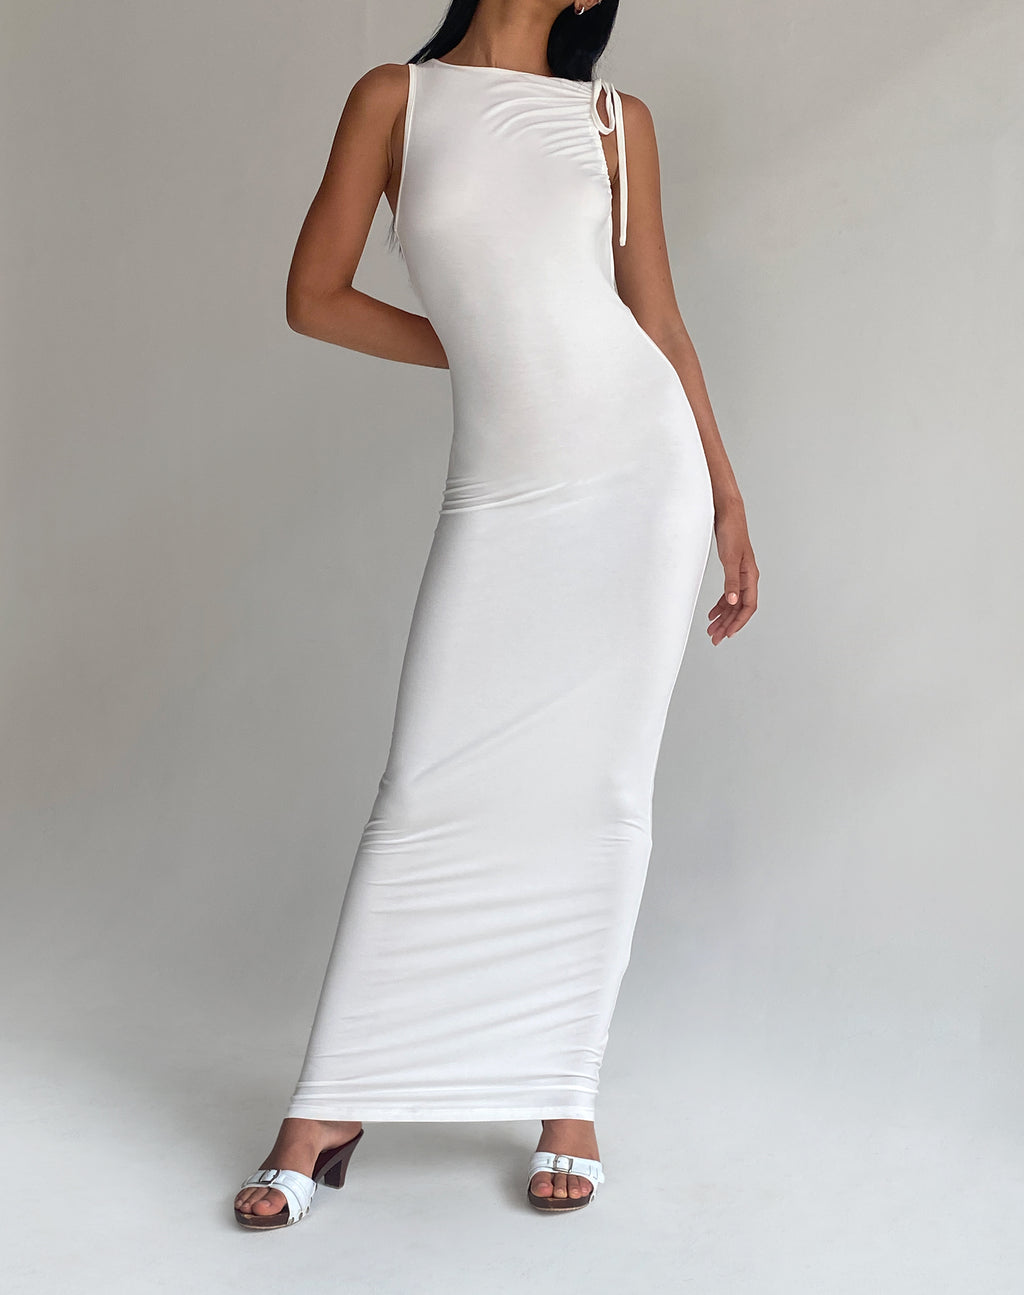 Elinor Maxi Dress in Slinky White